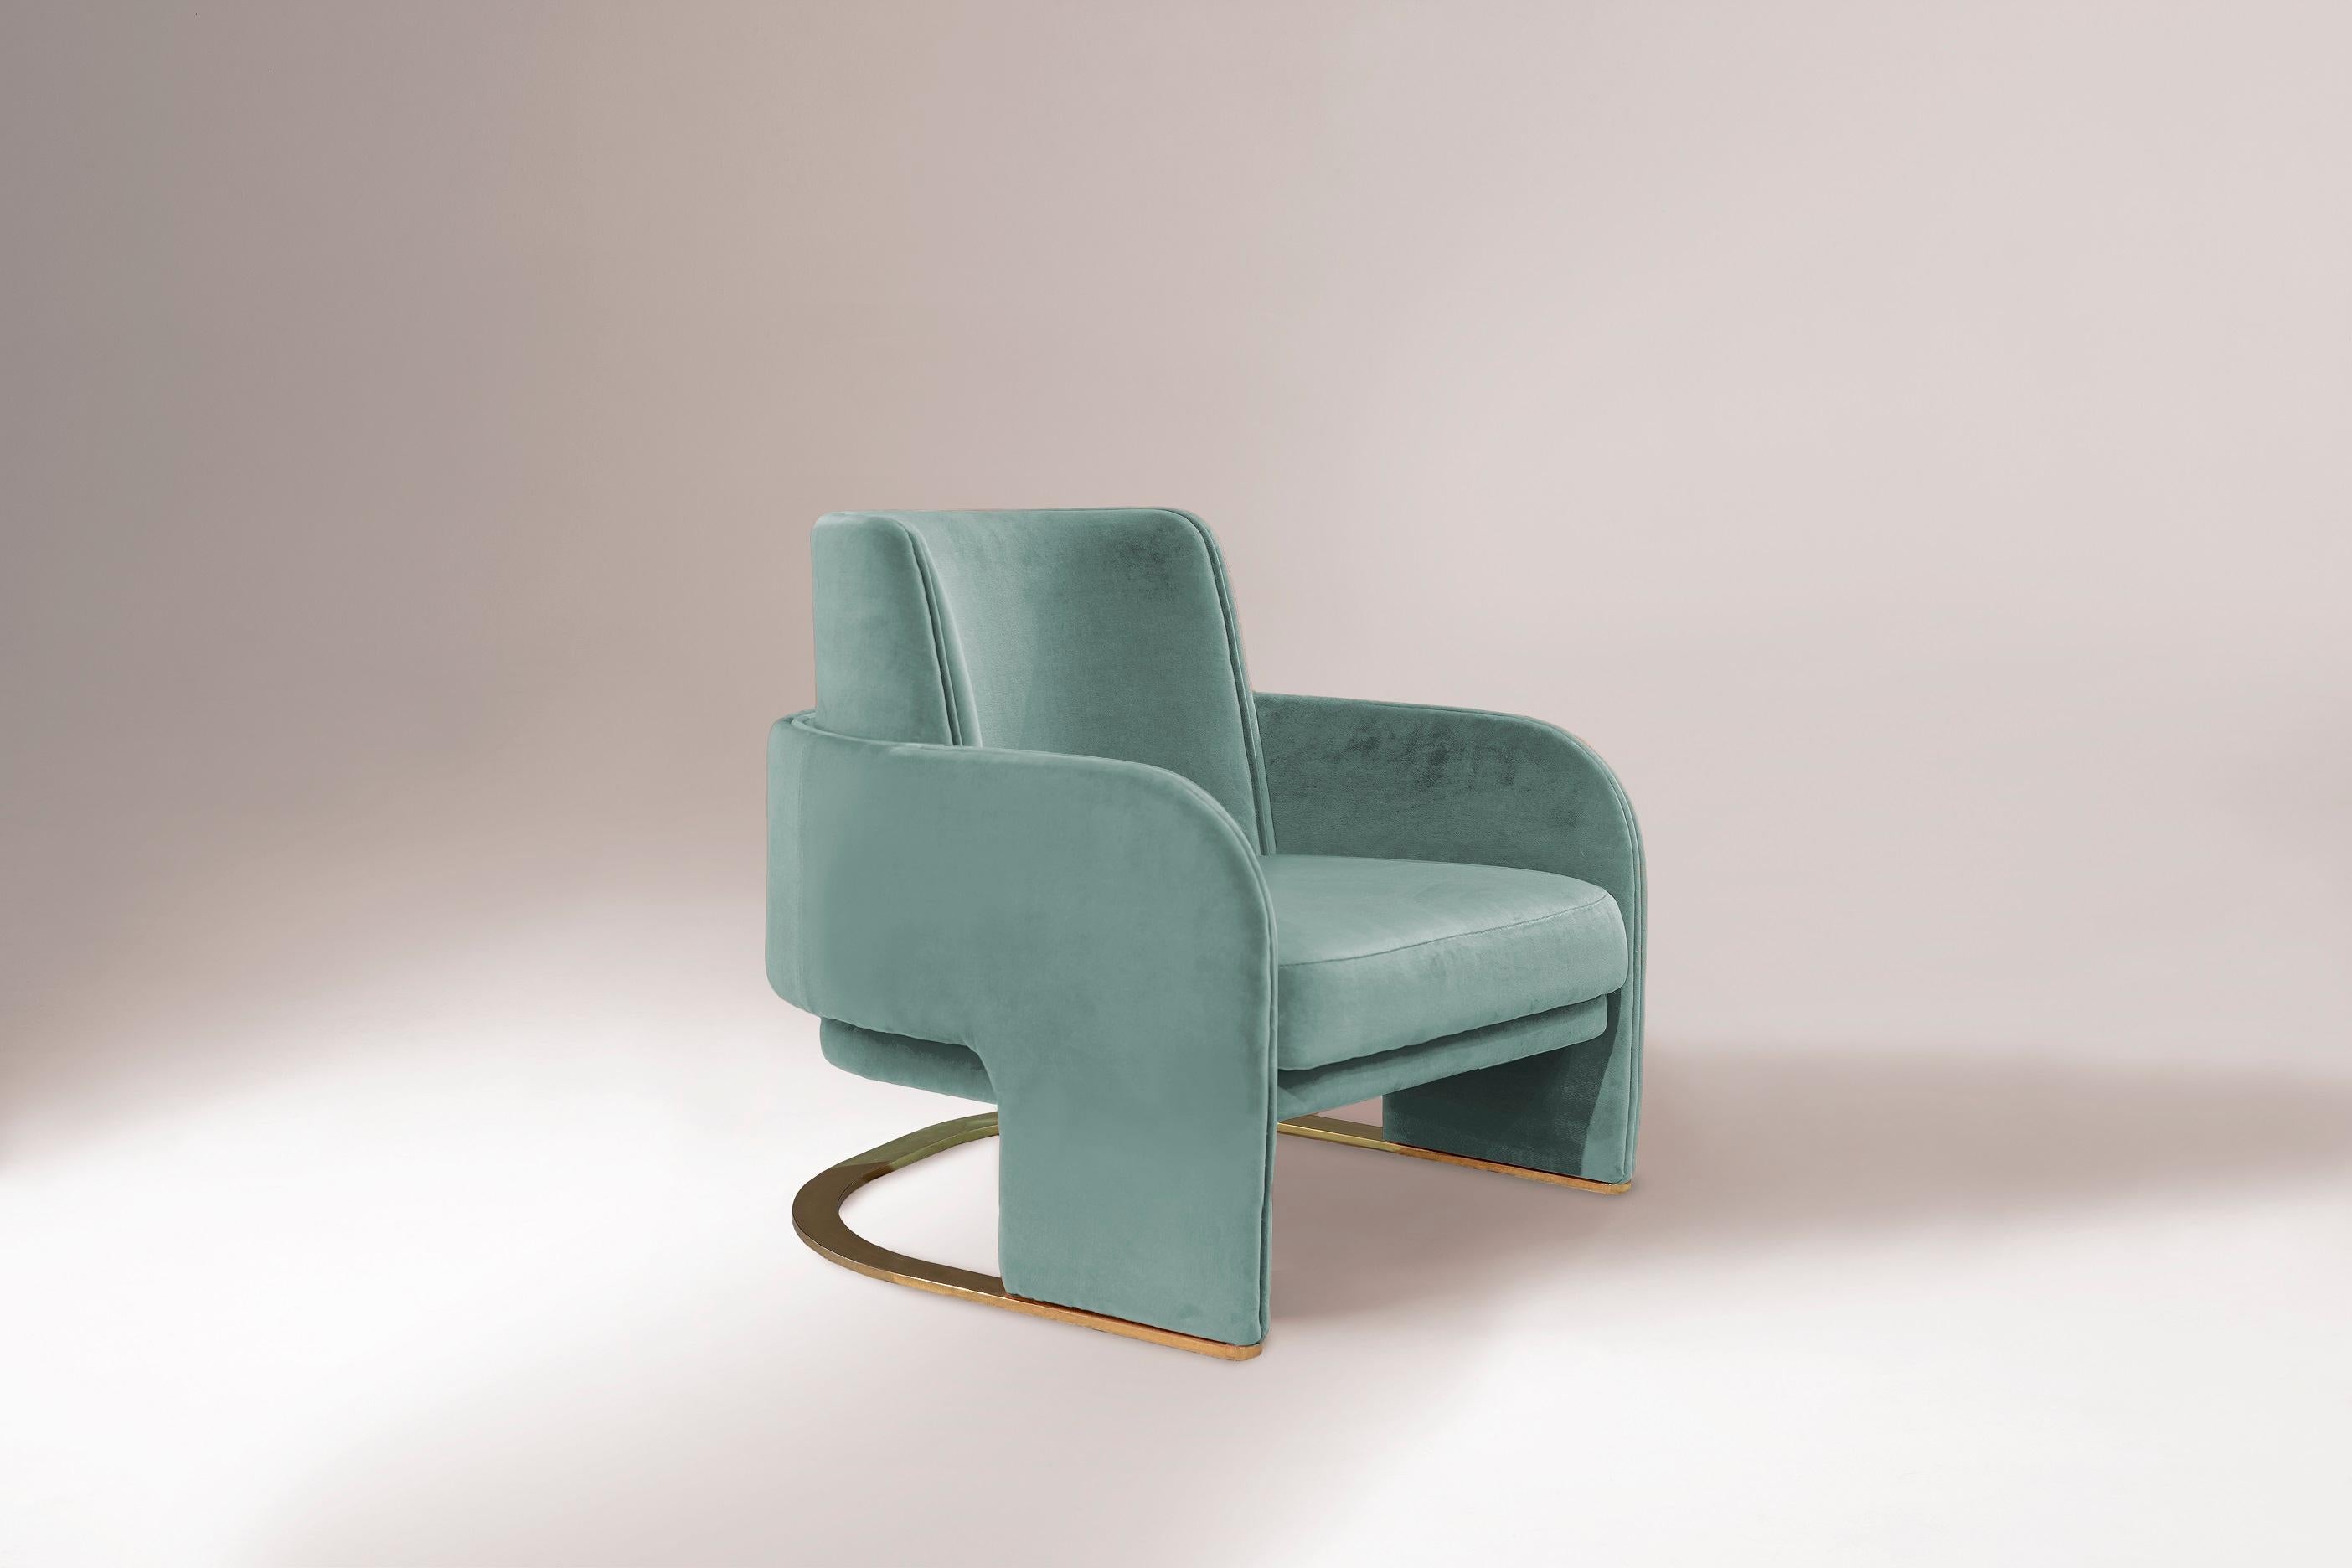 Der Sessel Odisseia verkörpert den ästhetischen Geist des Weltraumzeitalters, eine neue Art von diskretem Luxus und Komfort, inspiriert von einer futuristischen Ära, die von neuen visuellen Erfahrungen und Konzepten für die Zukunft geprägt ist.